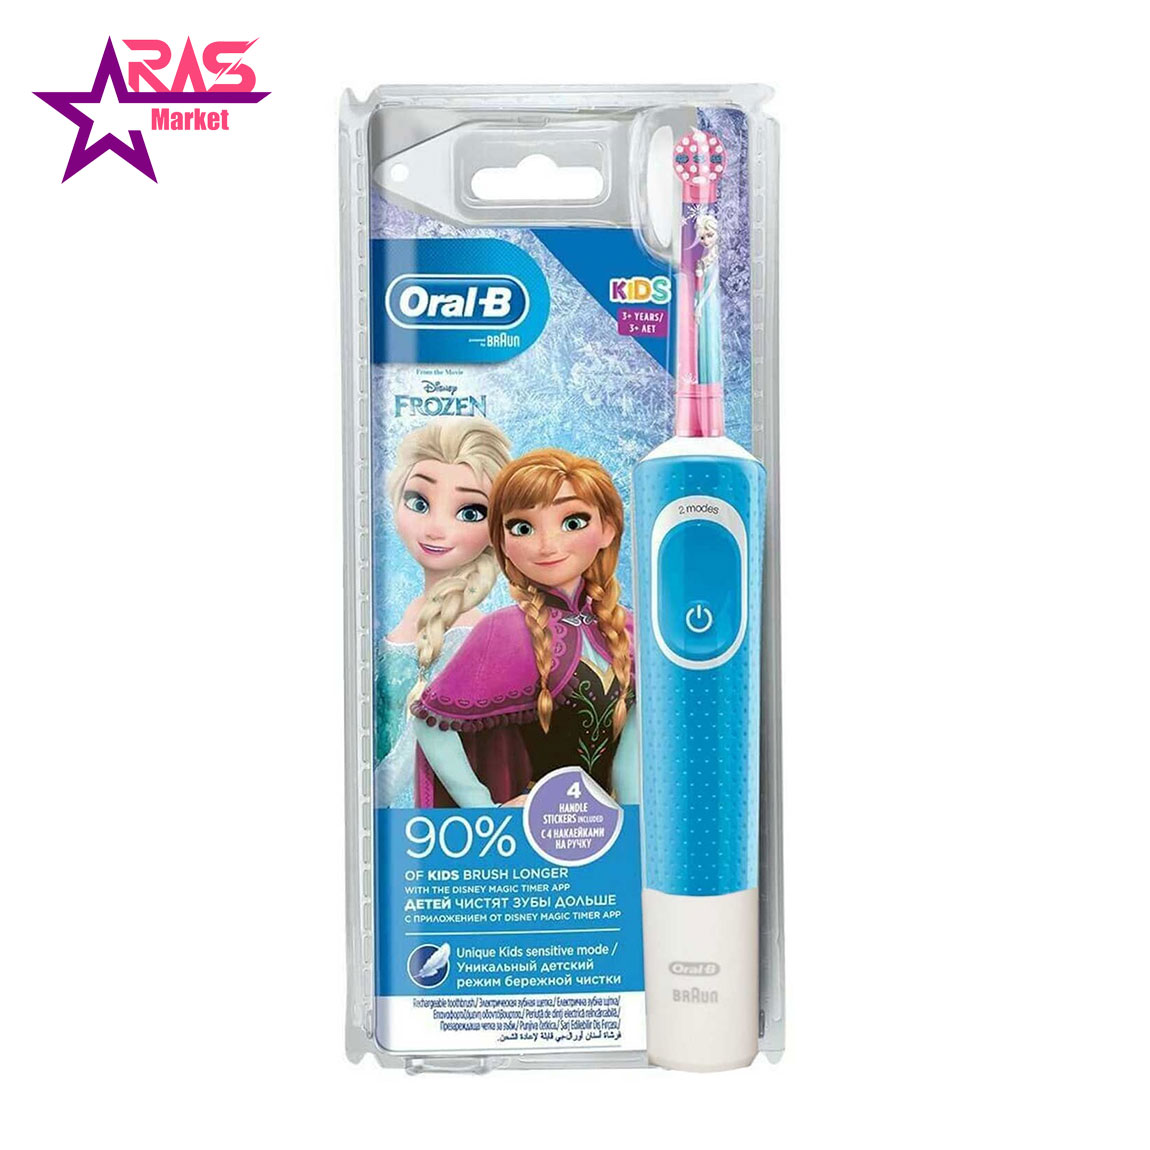 مسواک برقی کودک اورال بی مدل Frozen II ، فروشگاه اینترنتی ارس مارکت ، مسواک برقی oral b مخصوص کودکان